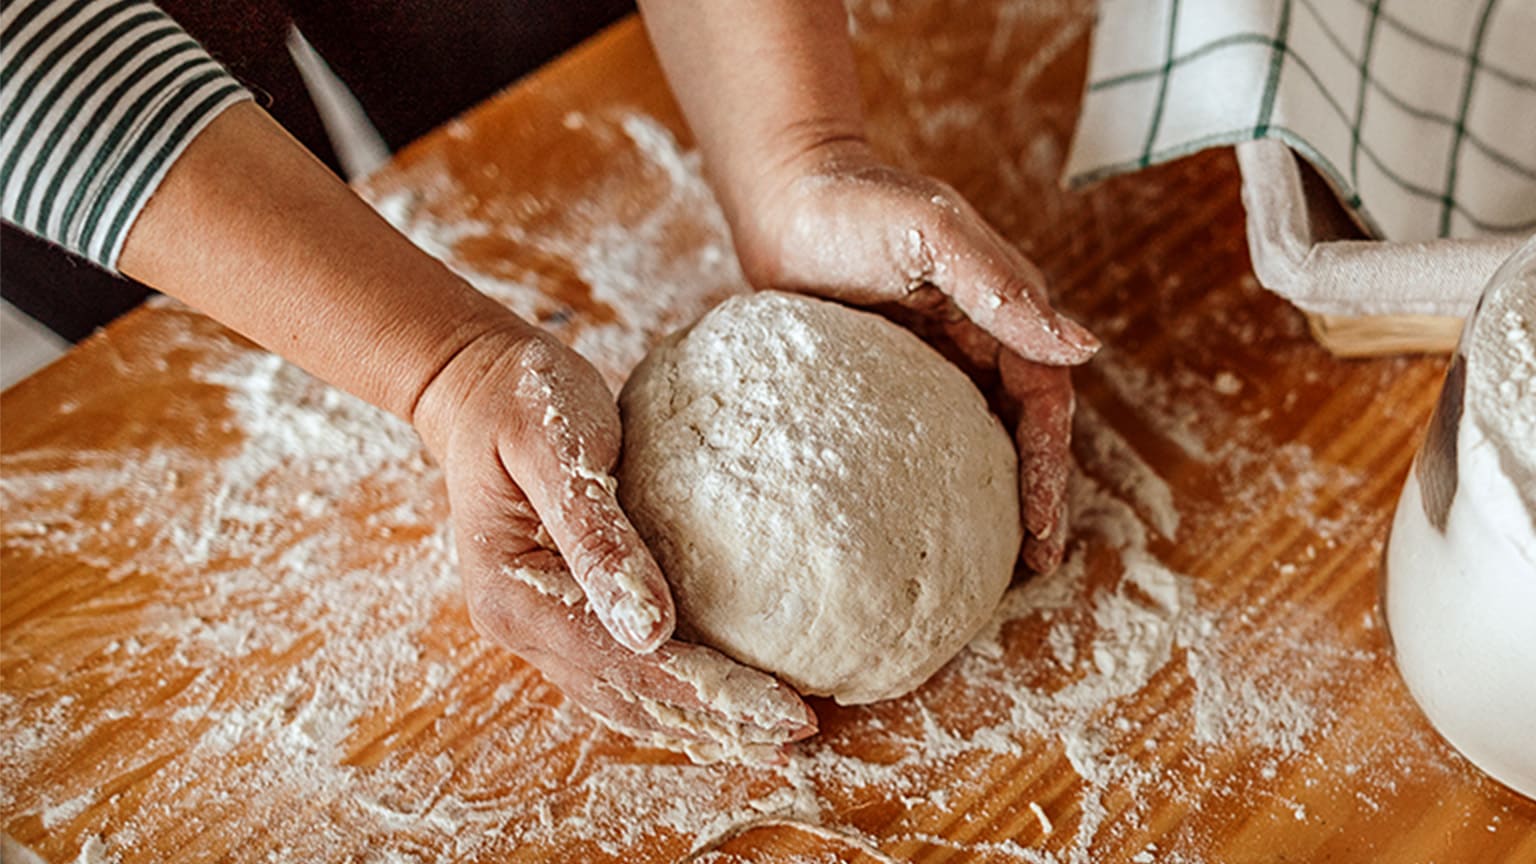 Une femme forme une boule de pâte sur une surface farinée.